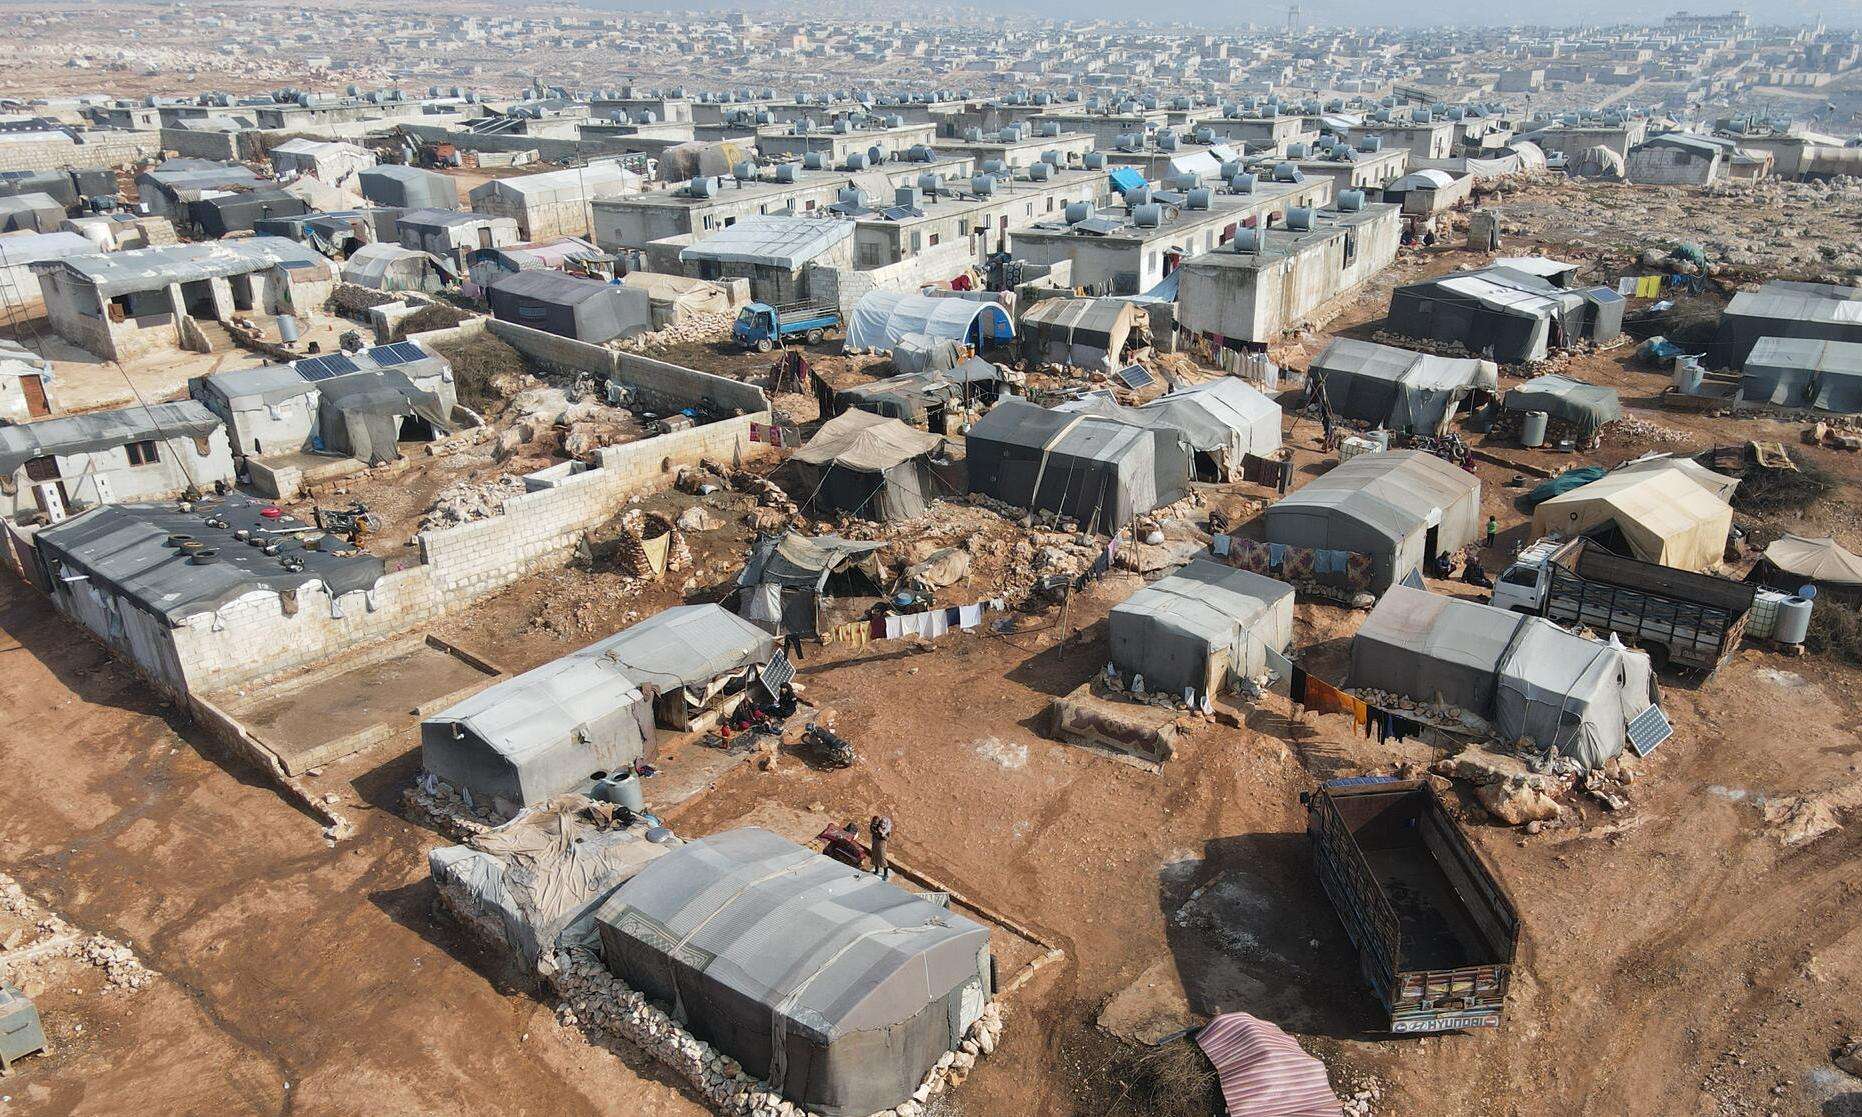 Mobile clinic in Al-Fuqara camp in Al-Dana area